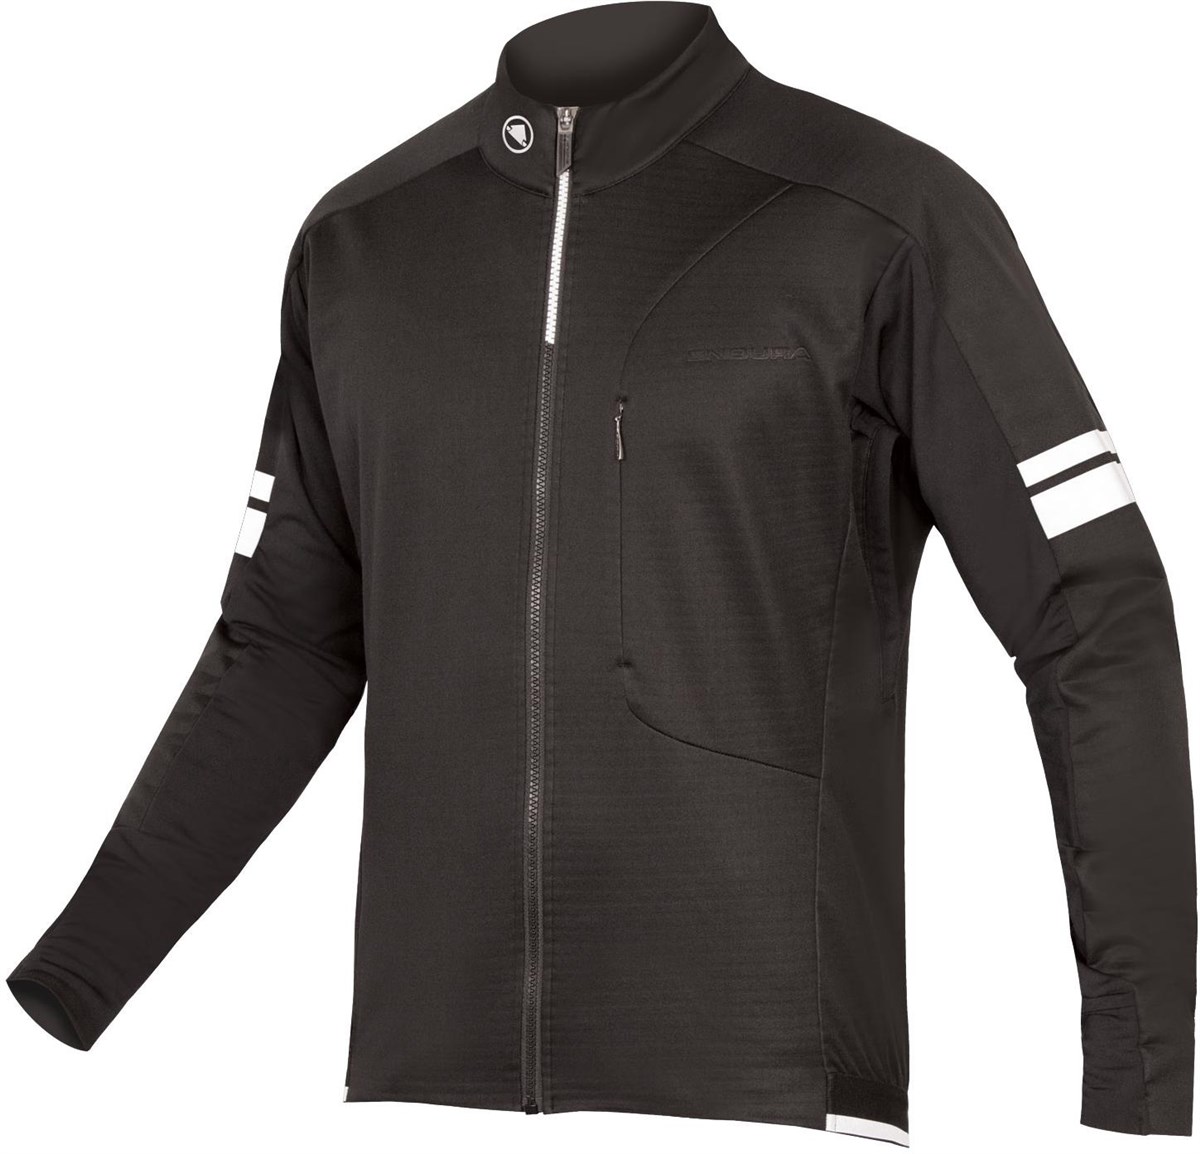 Endura Windchill Windproof Cycling Jacket product image